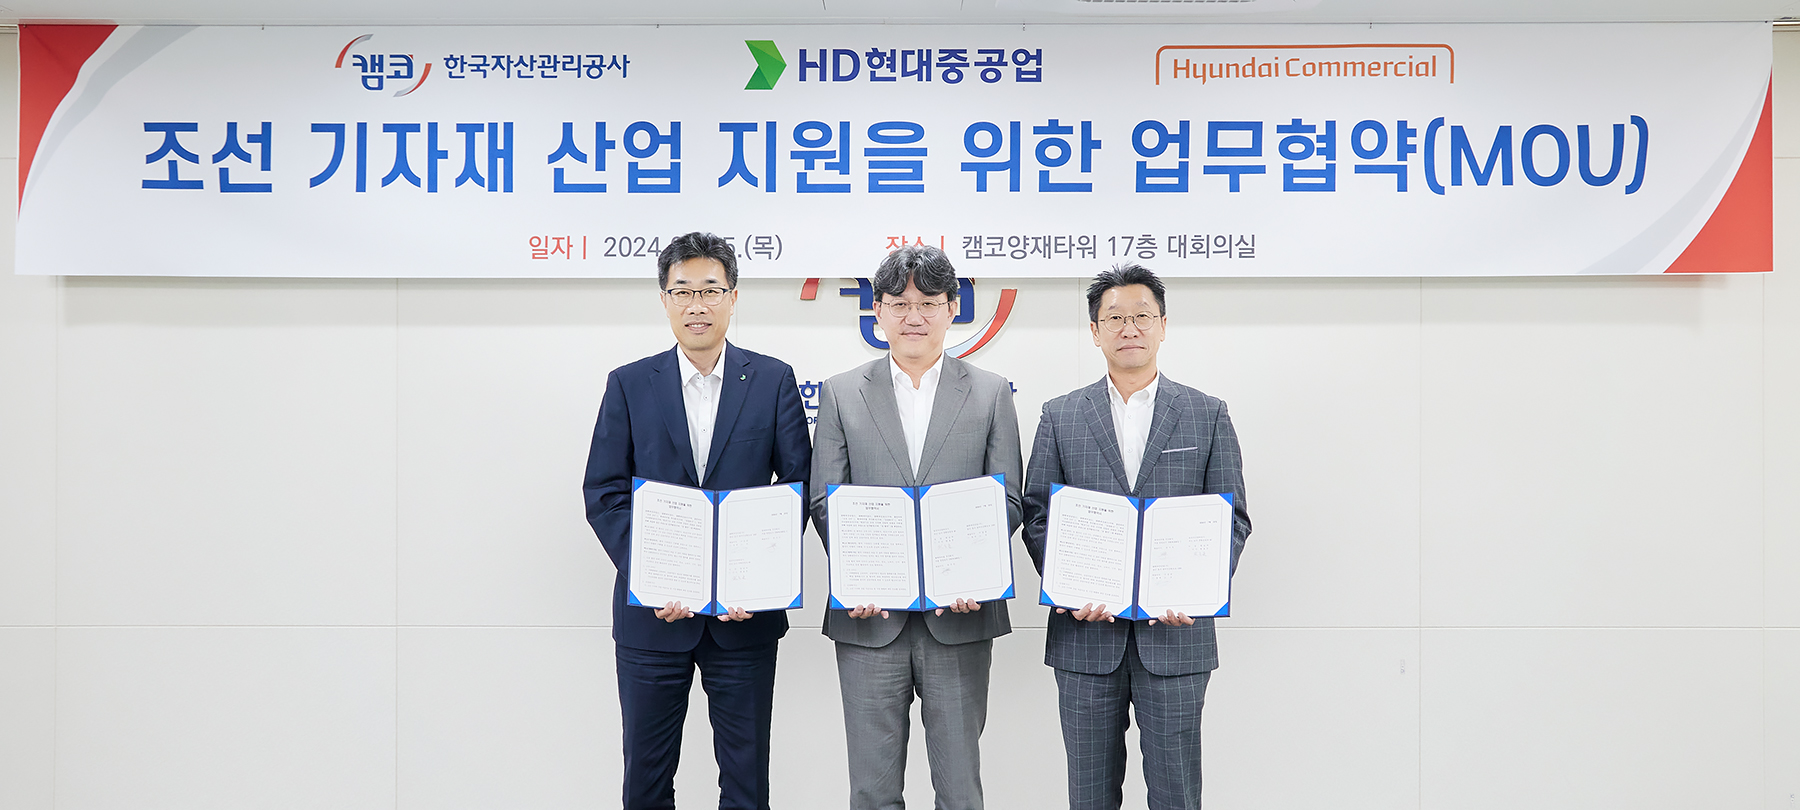 현대커머셜, HD현대 조선 3사-캠코와 조선기자재 산업 지원을 위한 협약 체결